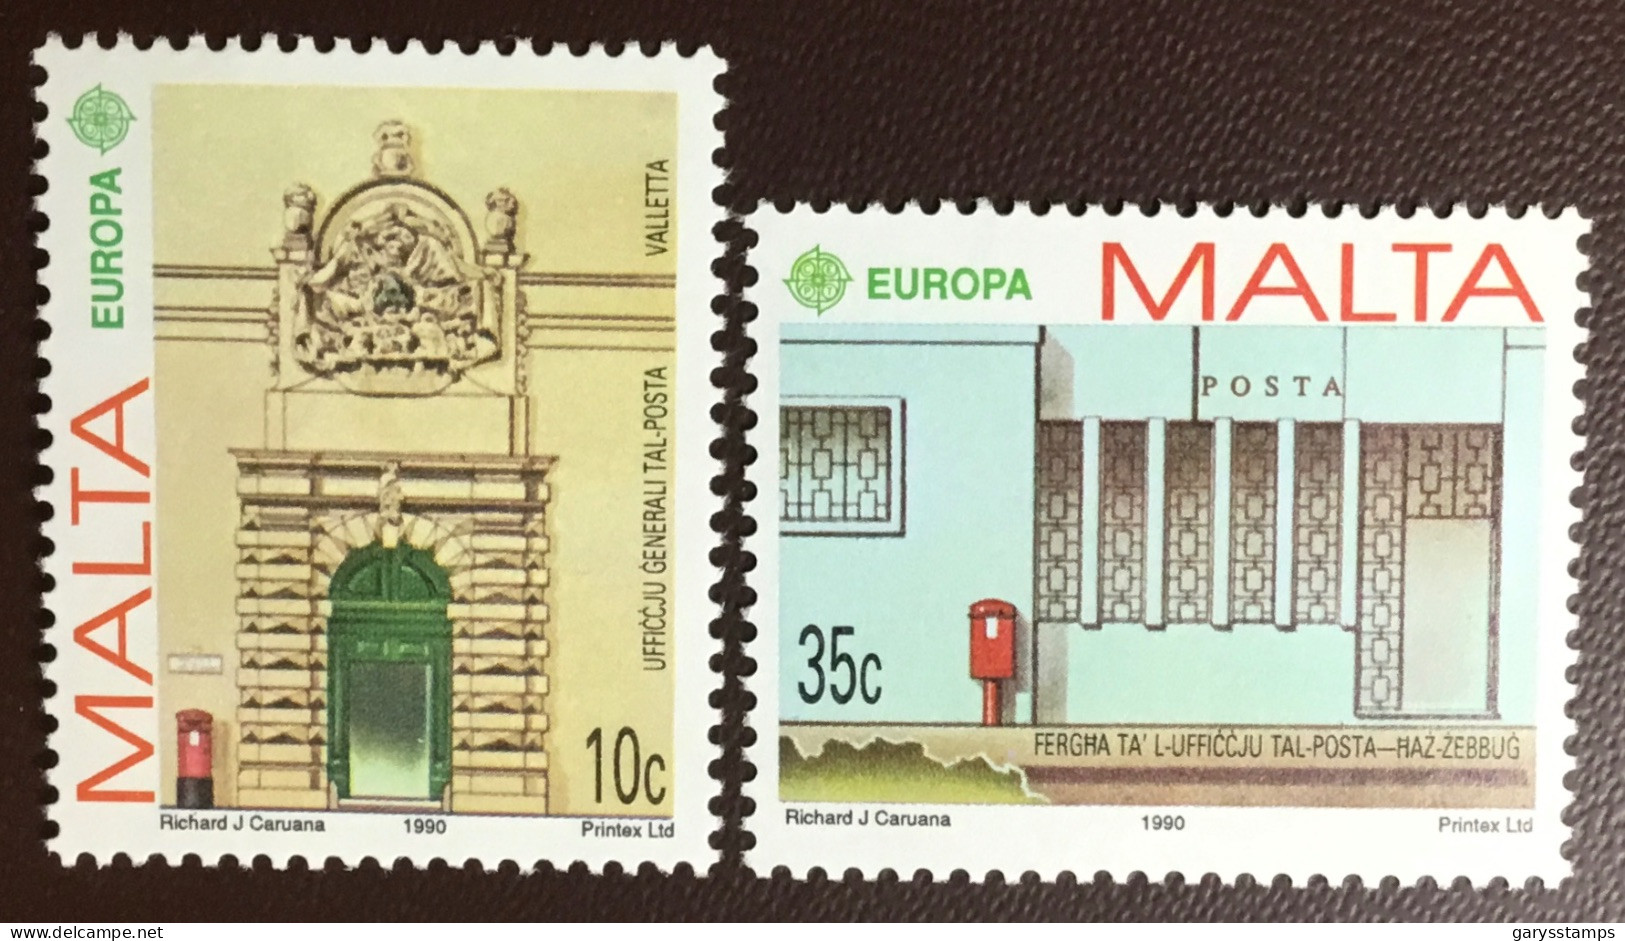 Malta 1990 Europa MNH - Malta